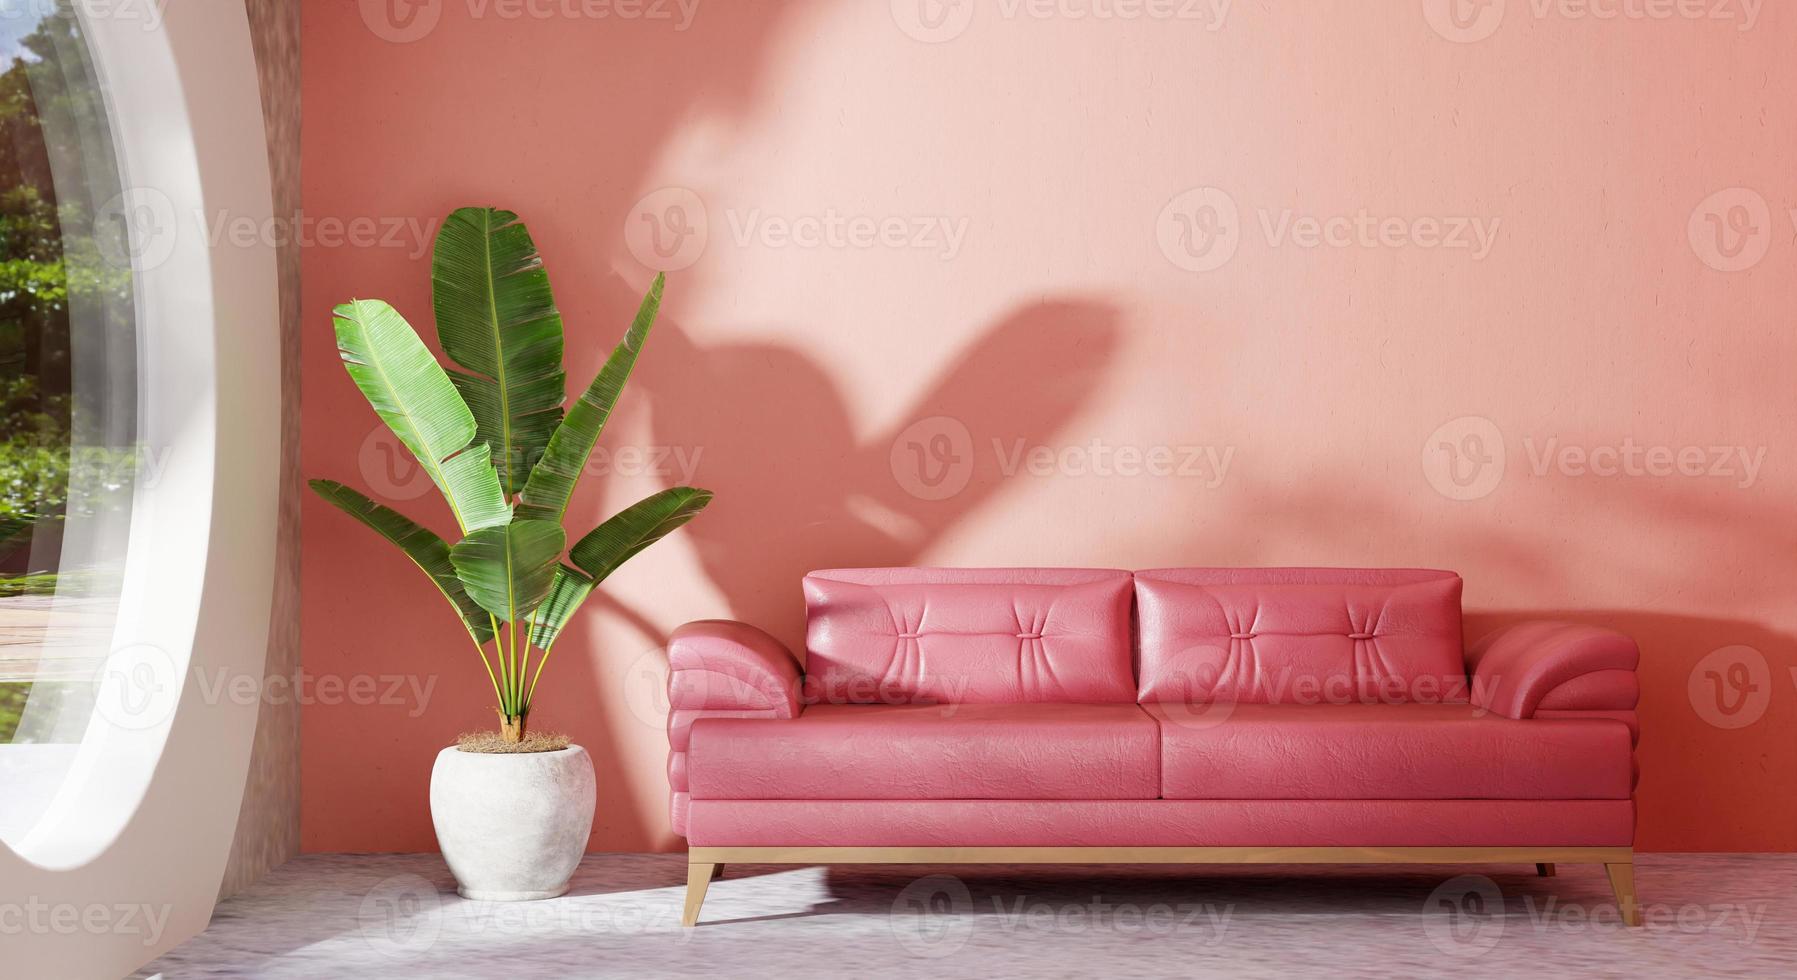 aconchegante sofá rosa pastel na moderna sala de estar com bananeira e olhar através do jardim da janela de vidro fora da vista externa no piso de concreto. arquitetura e conceito de interiores. renderização de ilustração 3D foto